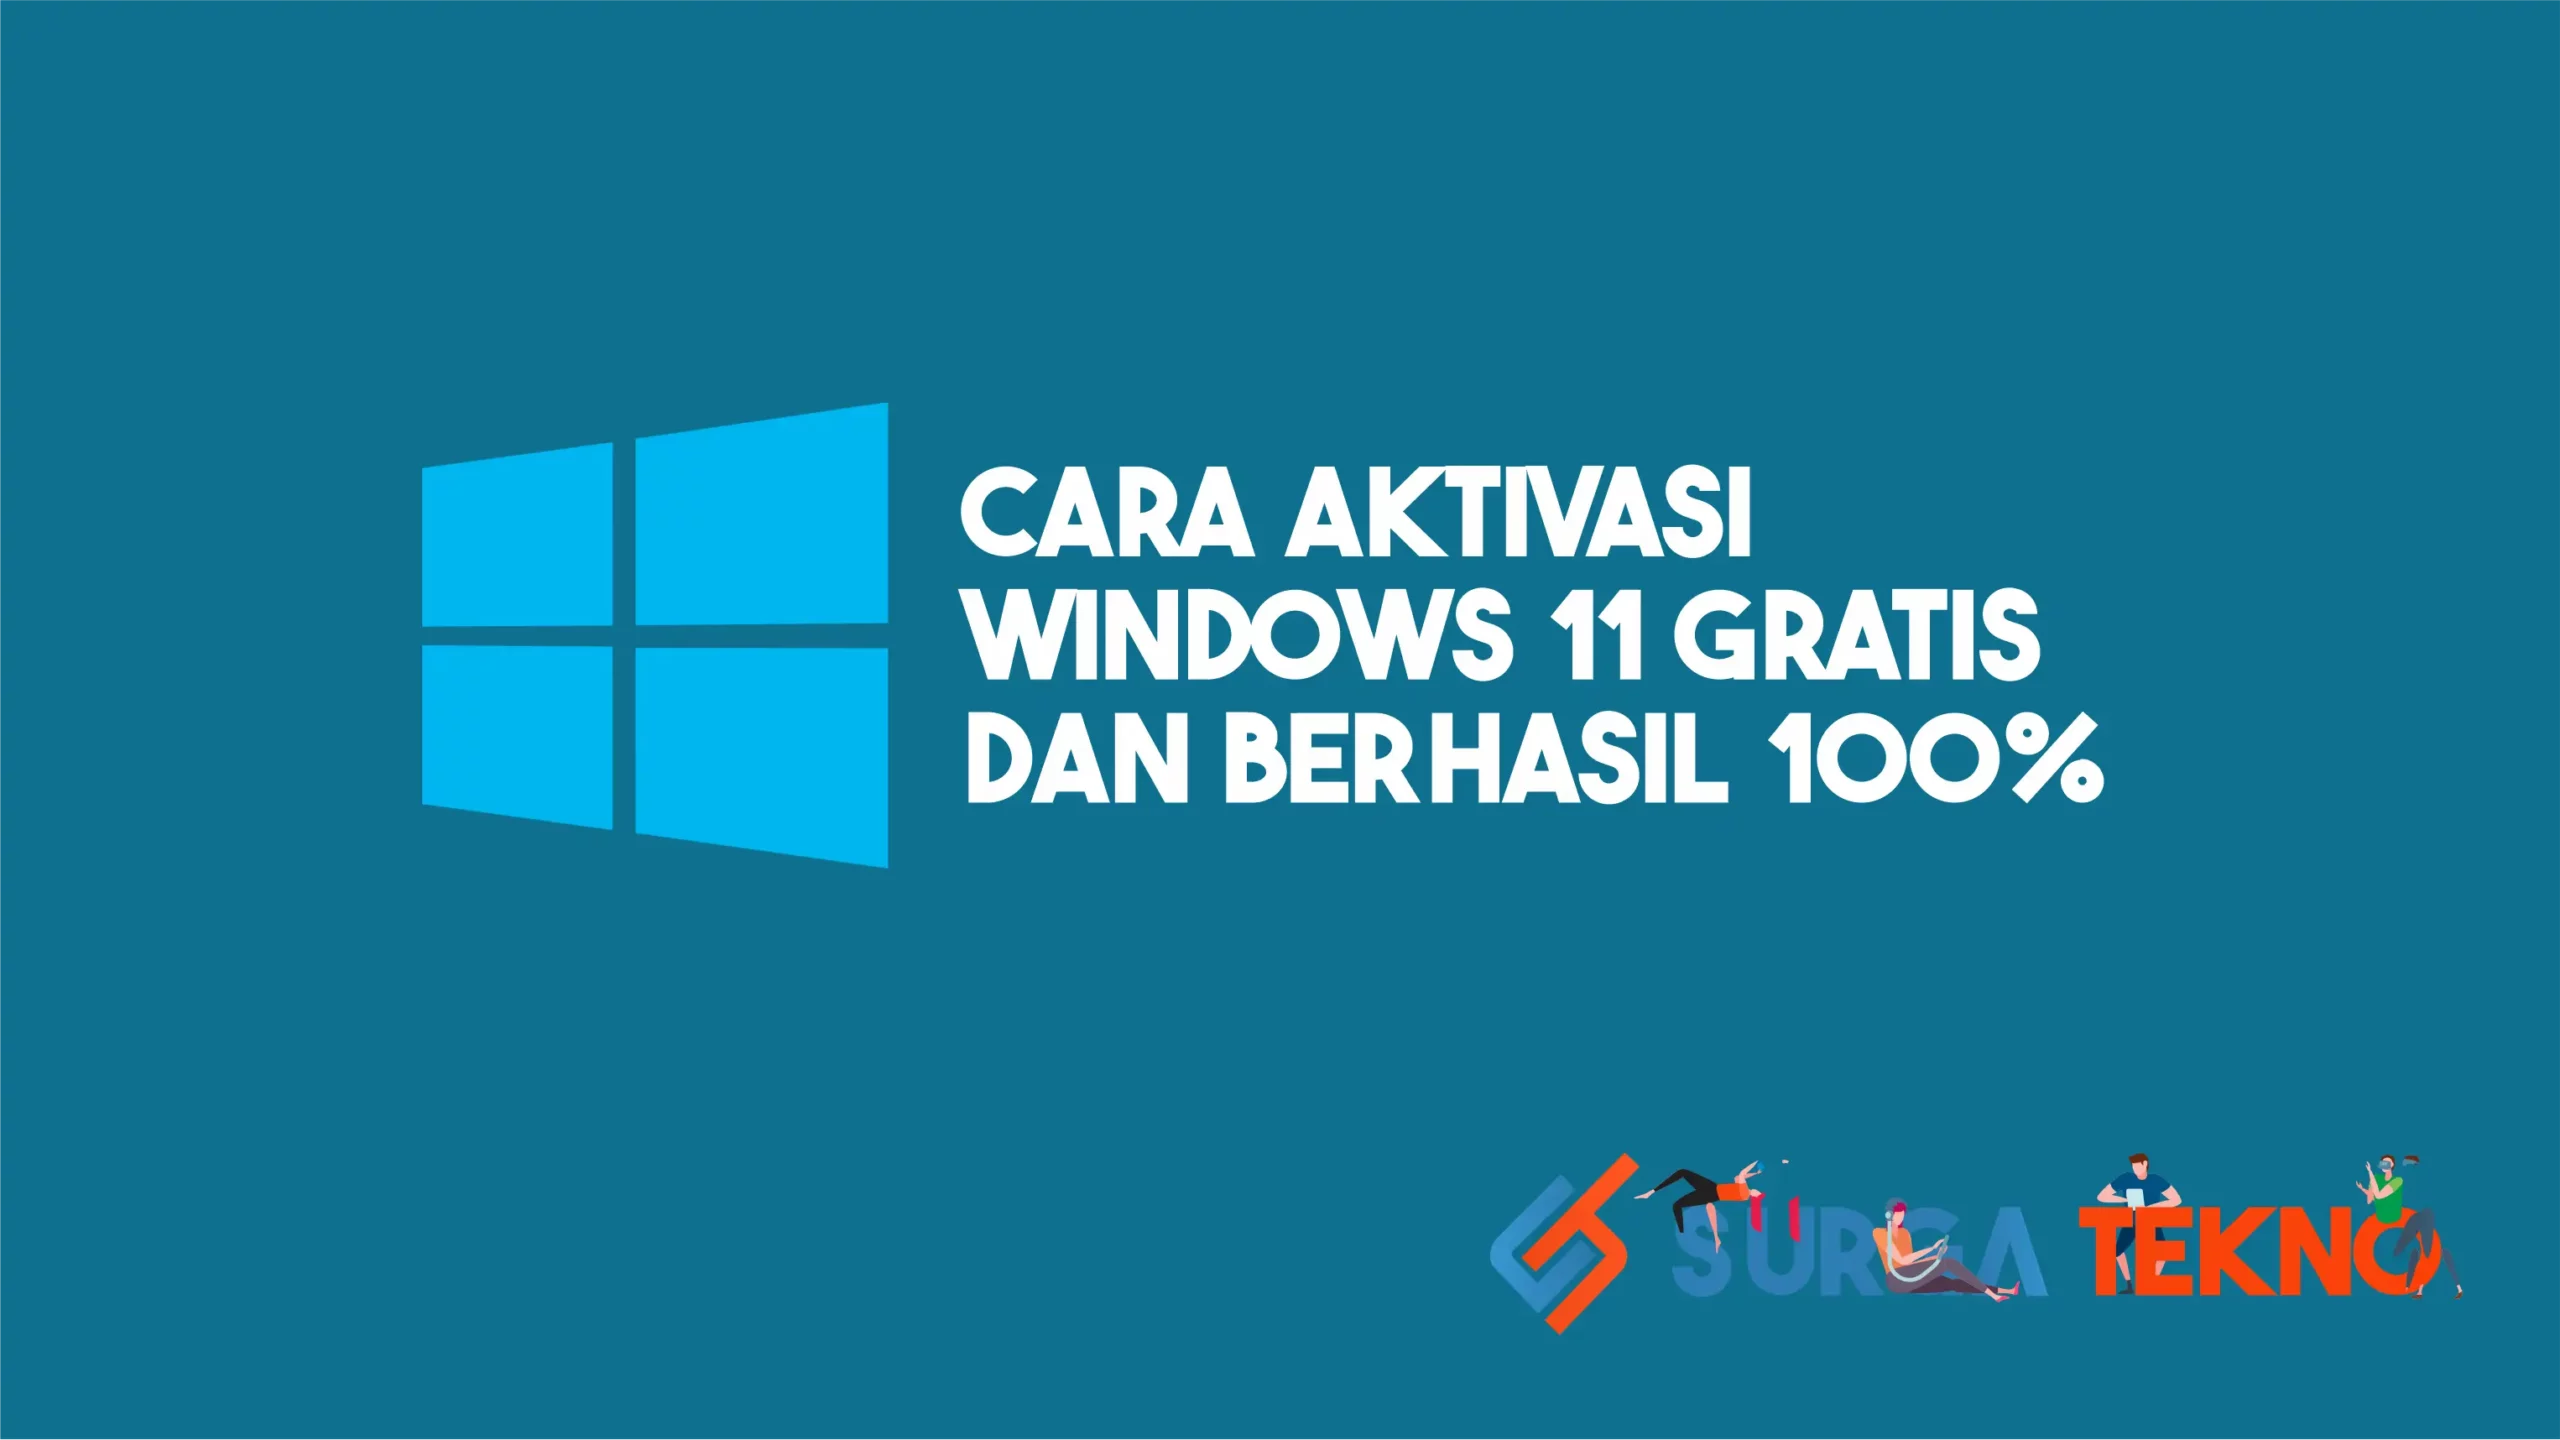 Cara Aktivasi Windows 11 (Gratis dan 100% Berhasil)